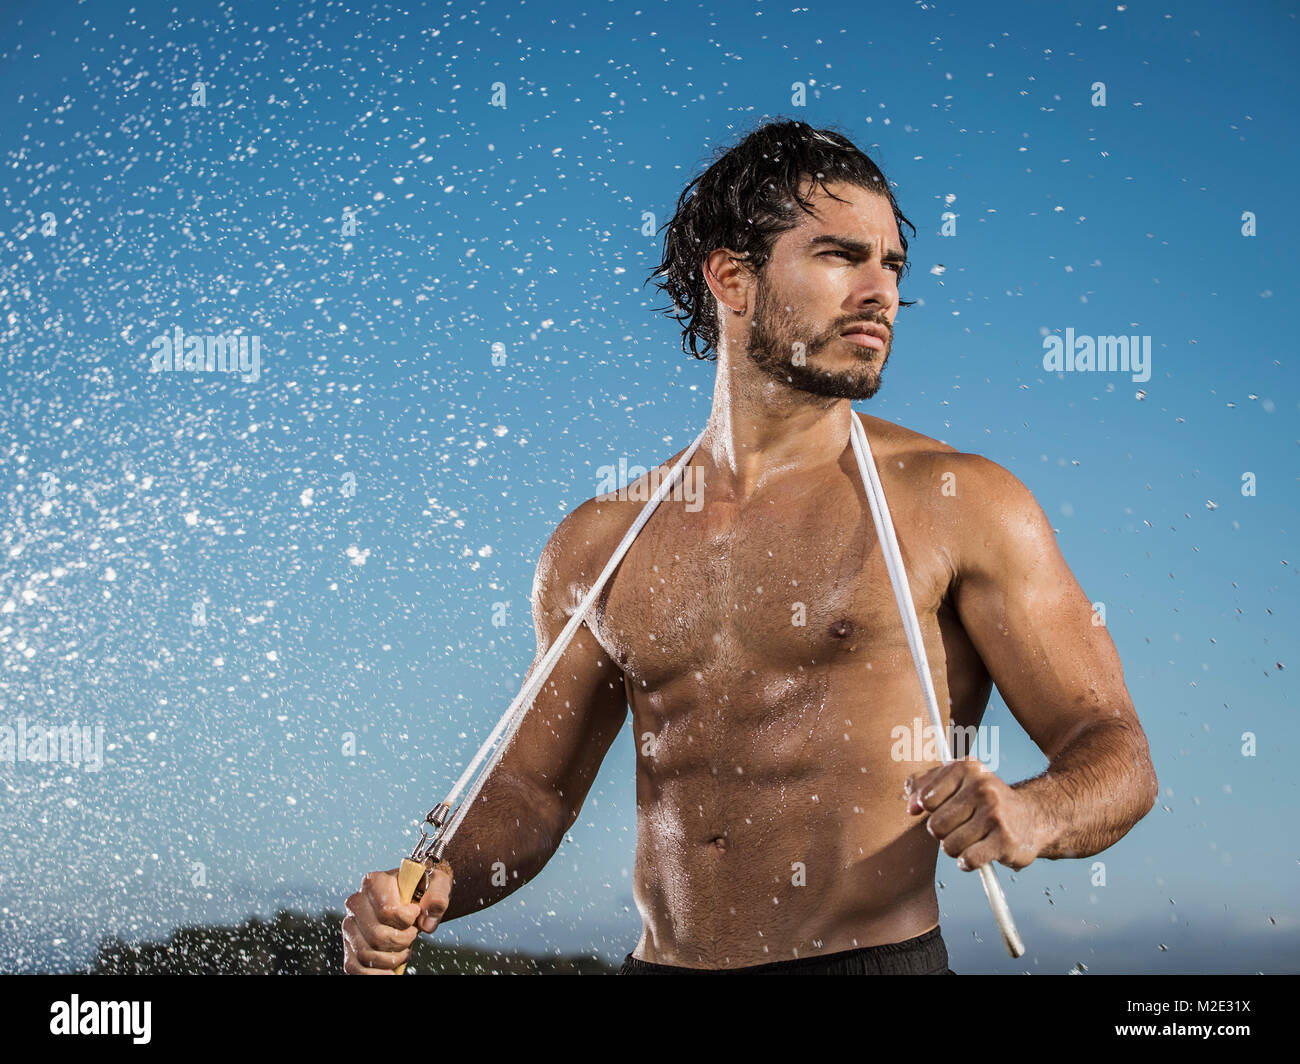 Water splashing on Hispanic man holding jump rope Stock Photo